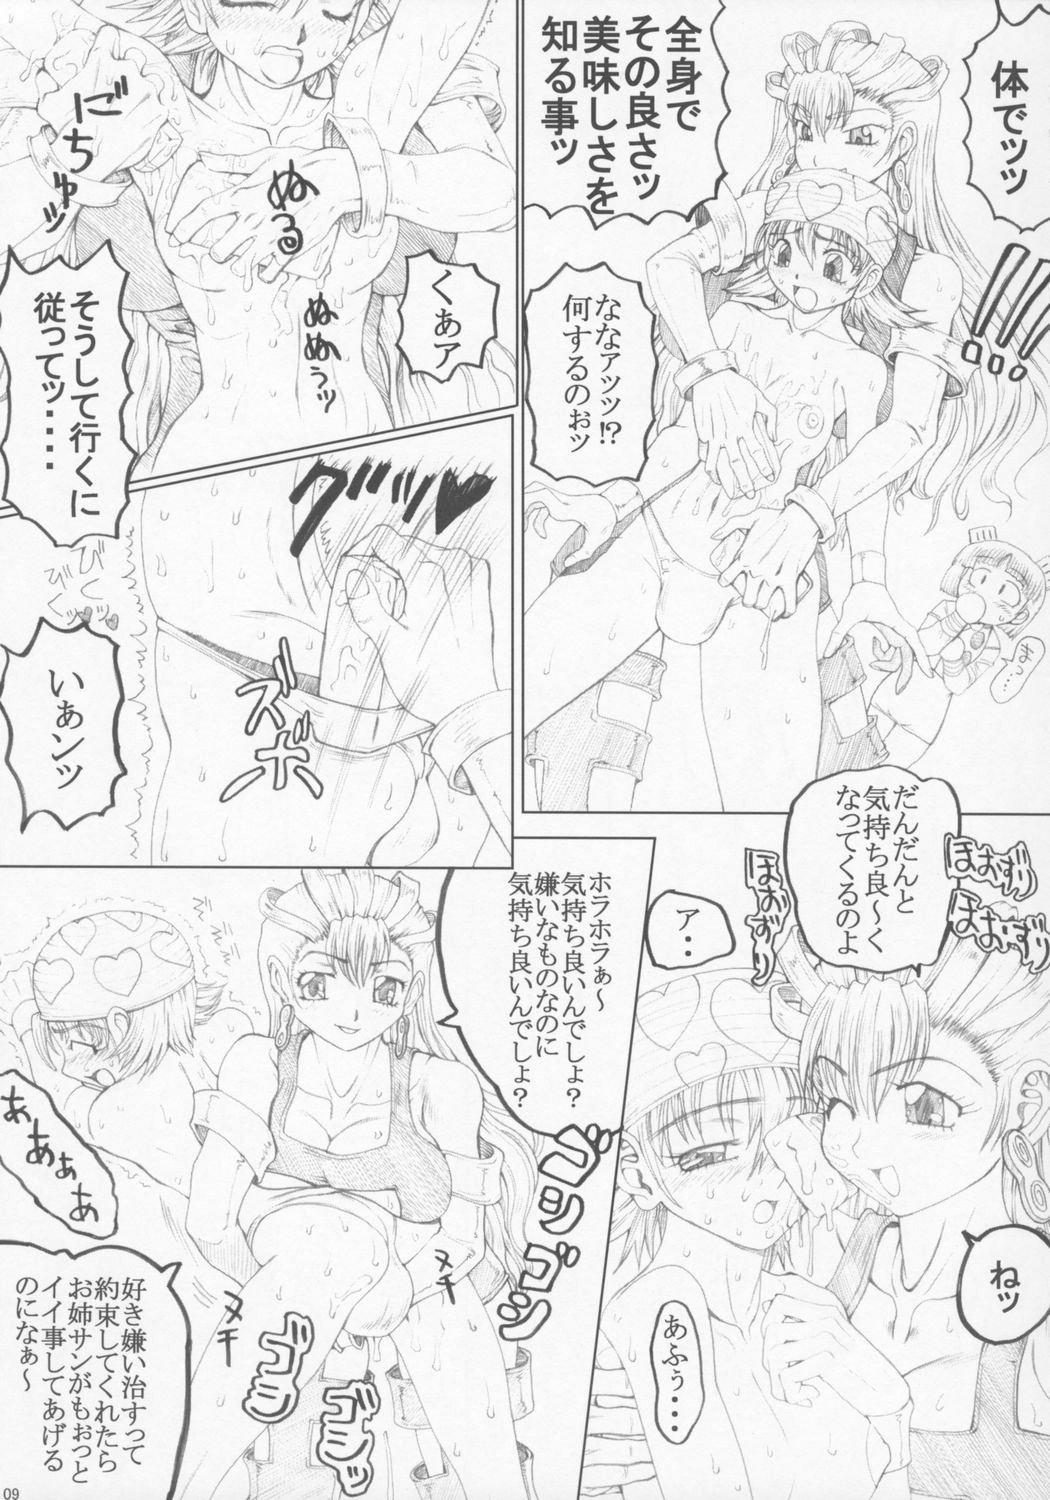 Long Misohito Spooning - Page 7